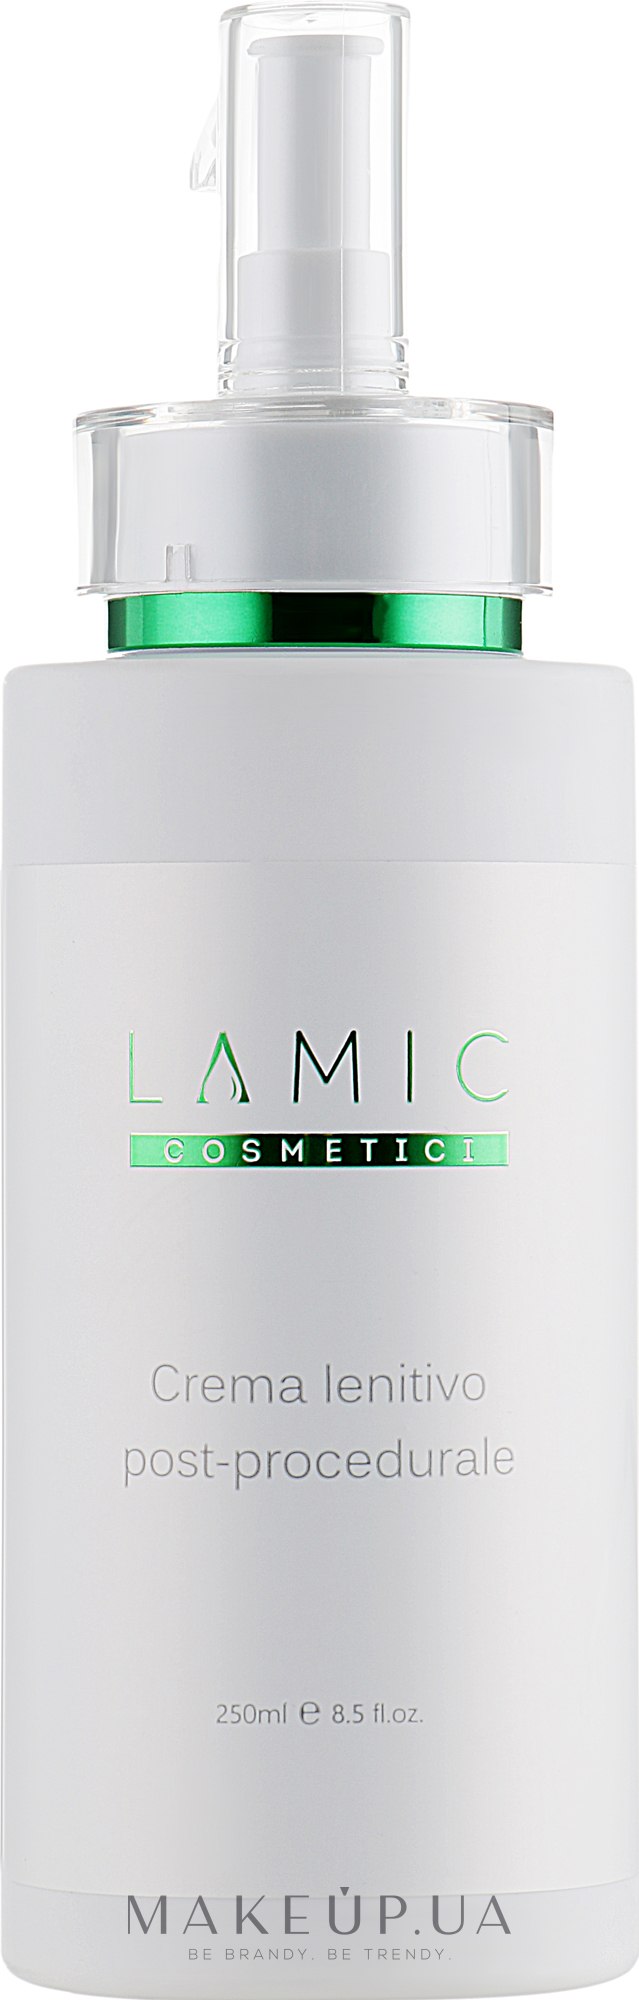 Finishing Face Cream - Lamic Cosmetici Crema Lentivo Post-procedurale — фото 250ml